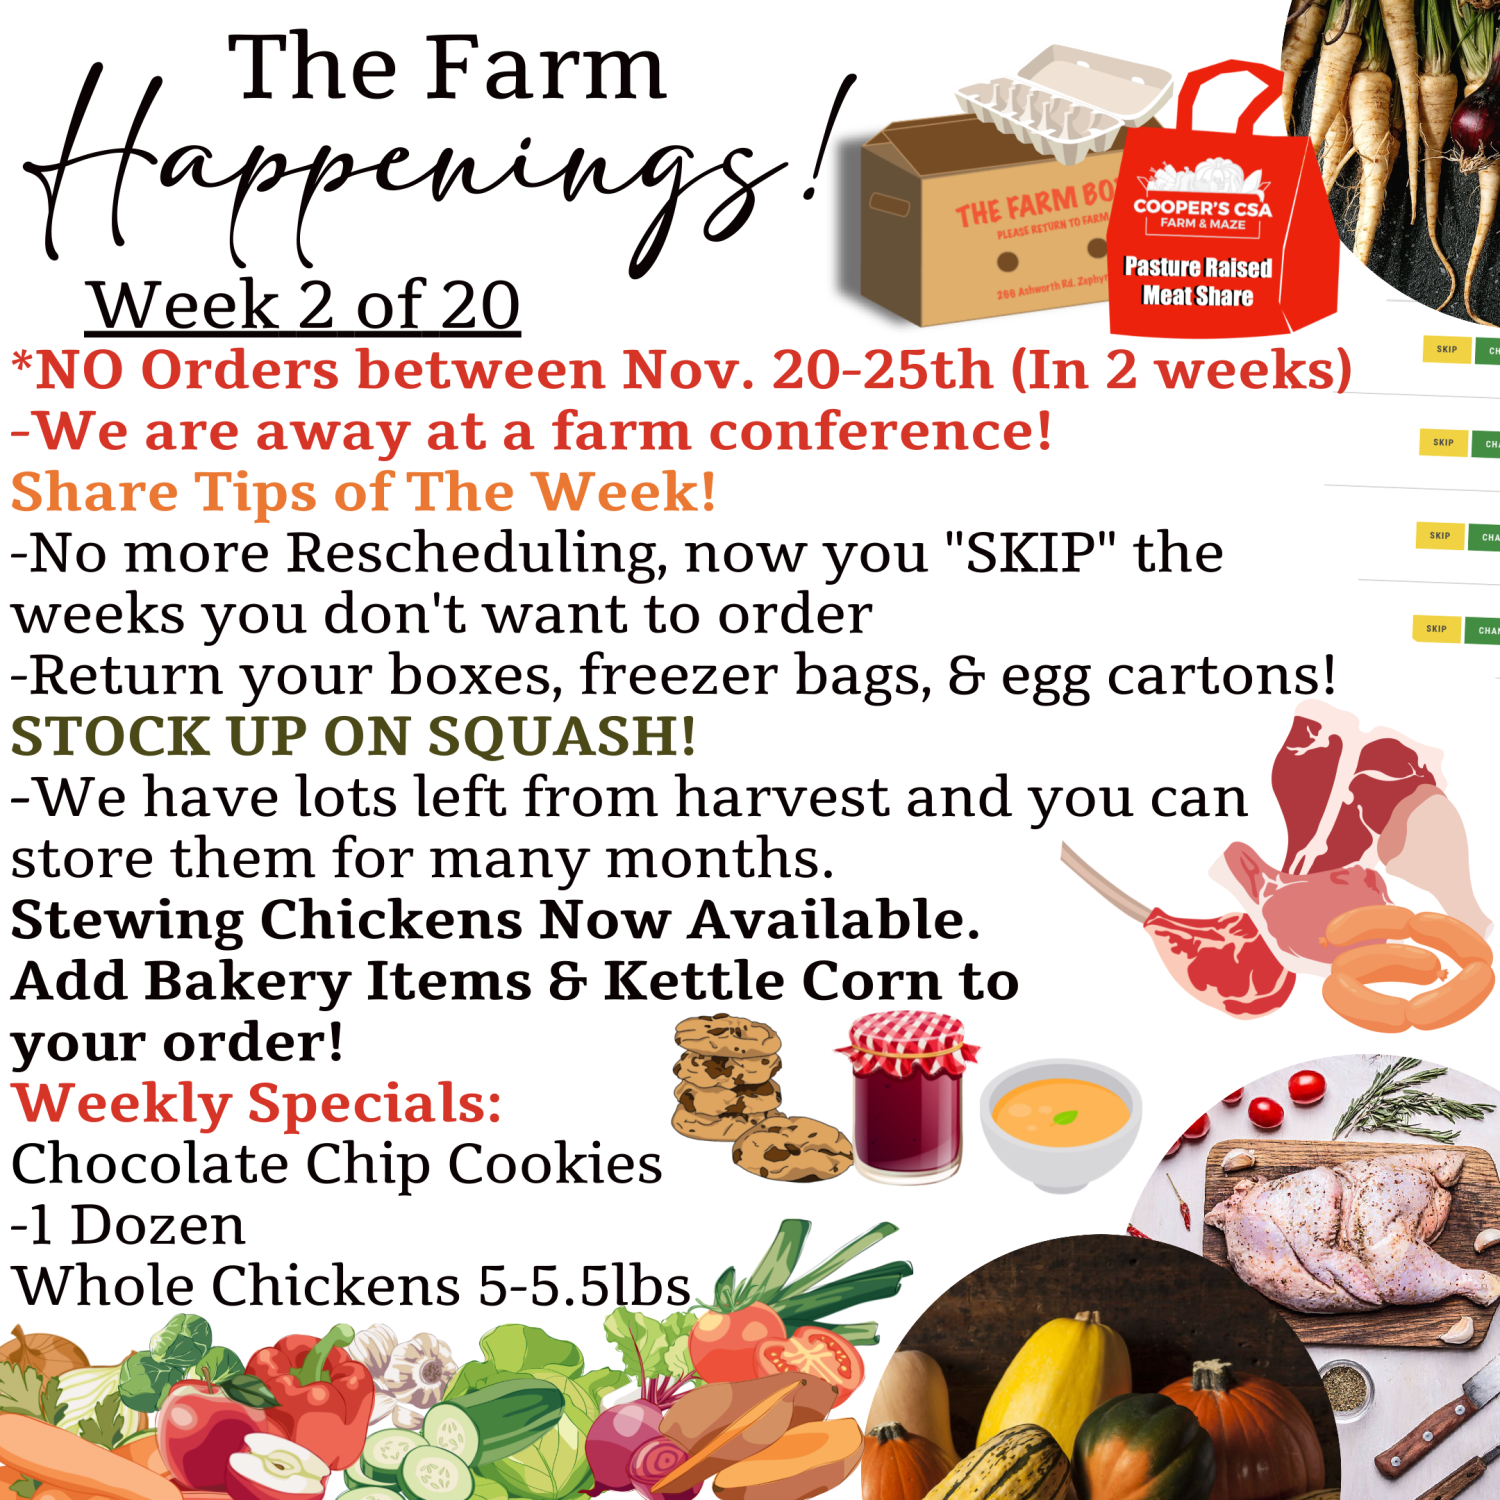 "The Farm Box"-Coopers CSA Farm Farm Happenings Nov 14-18